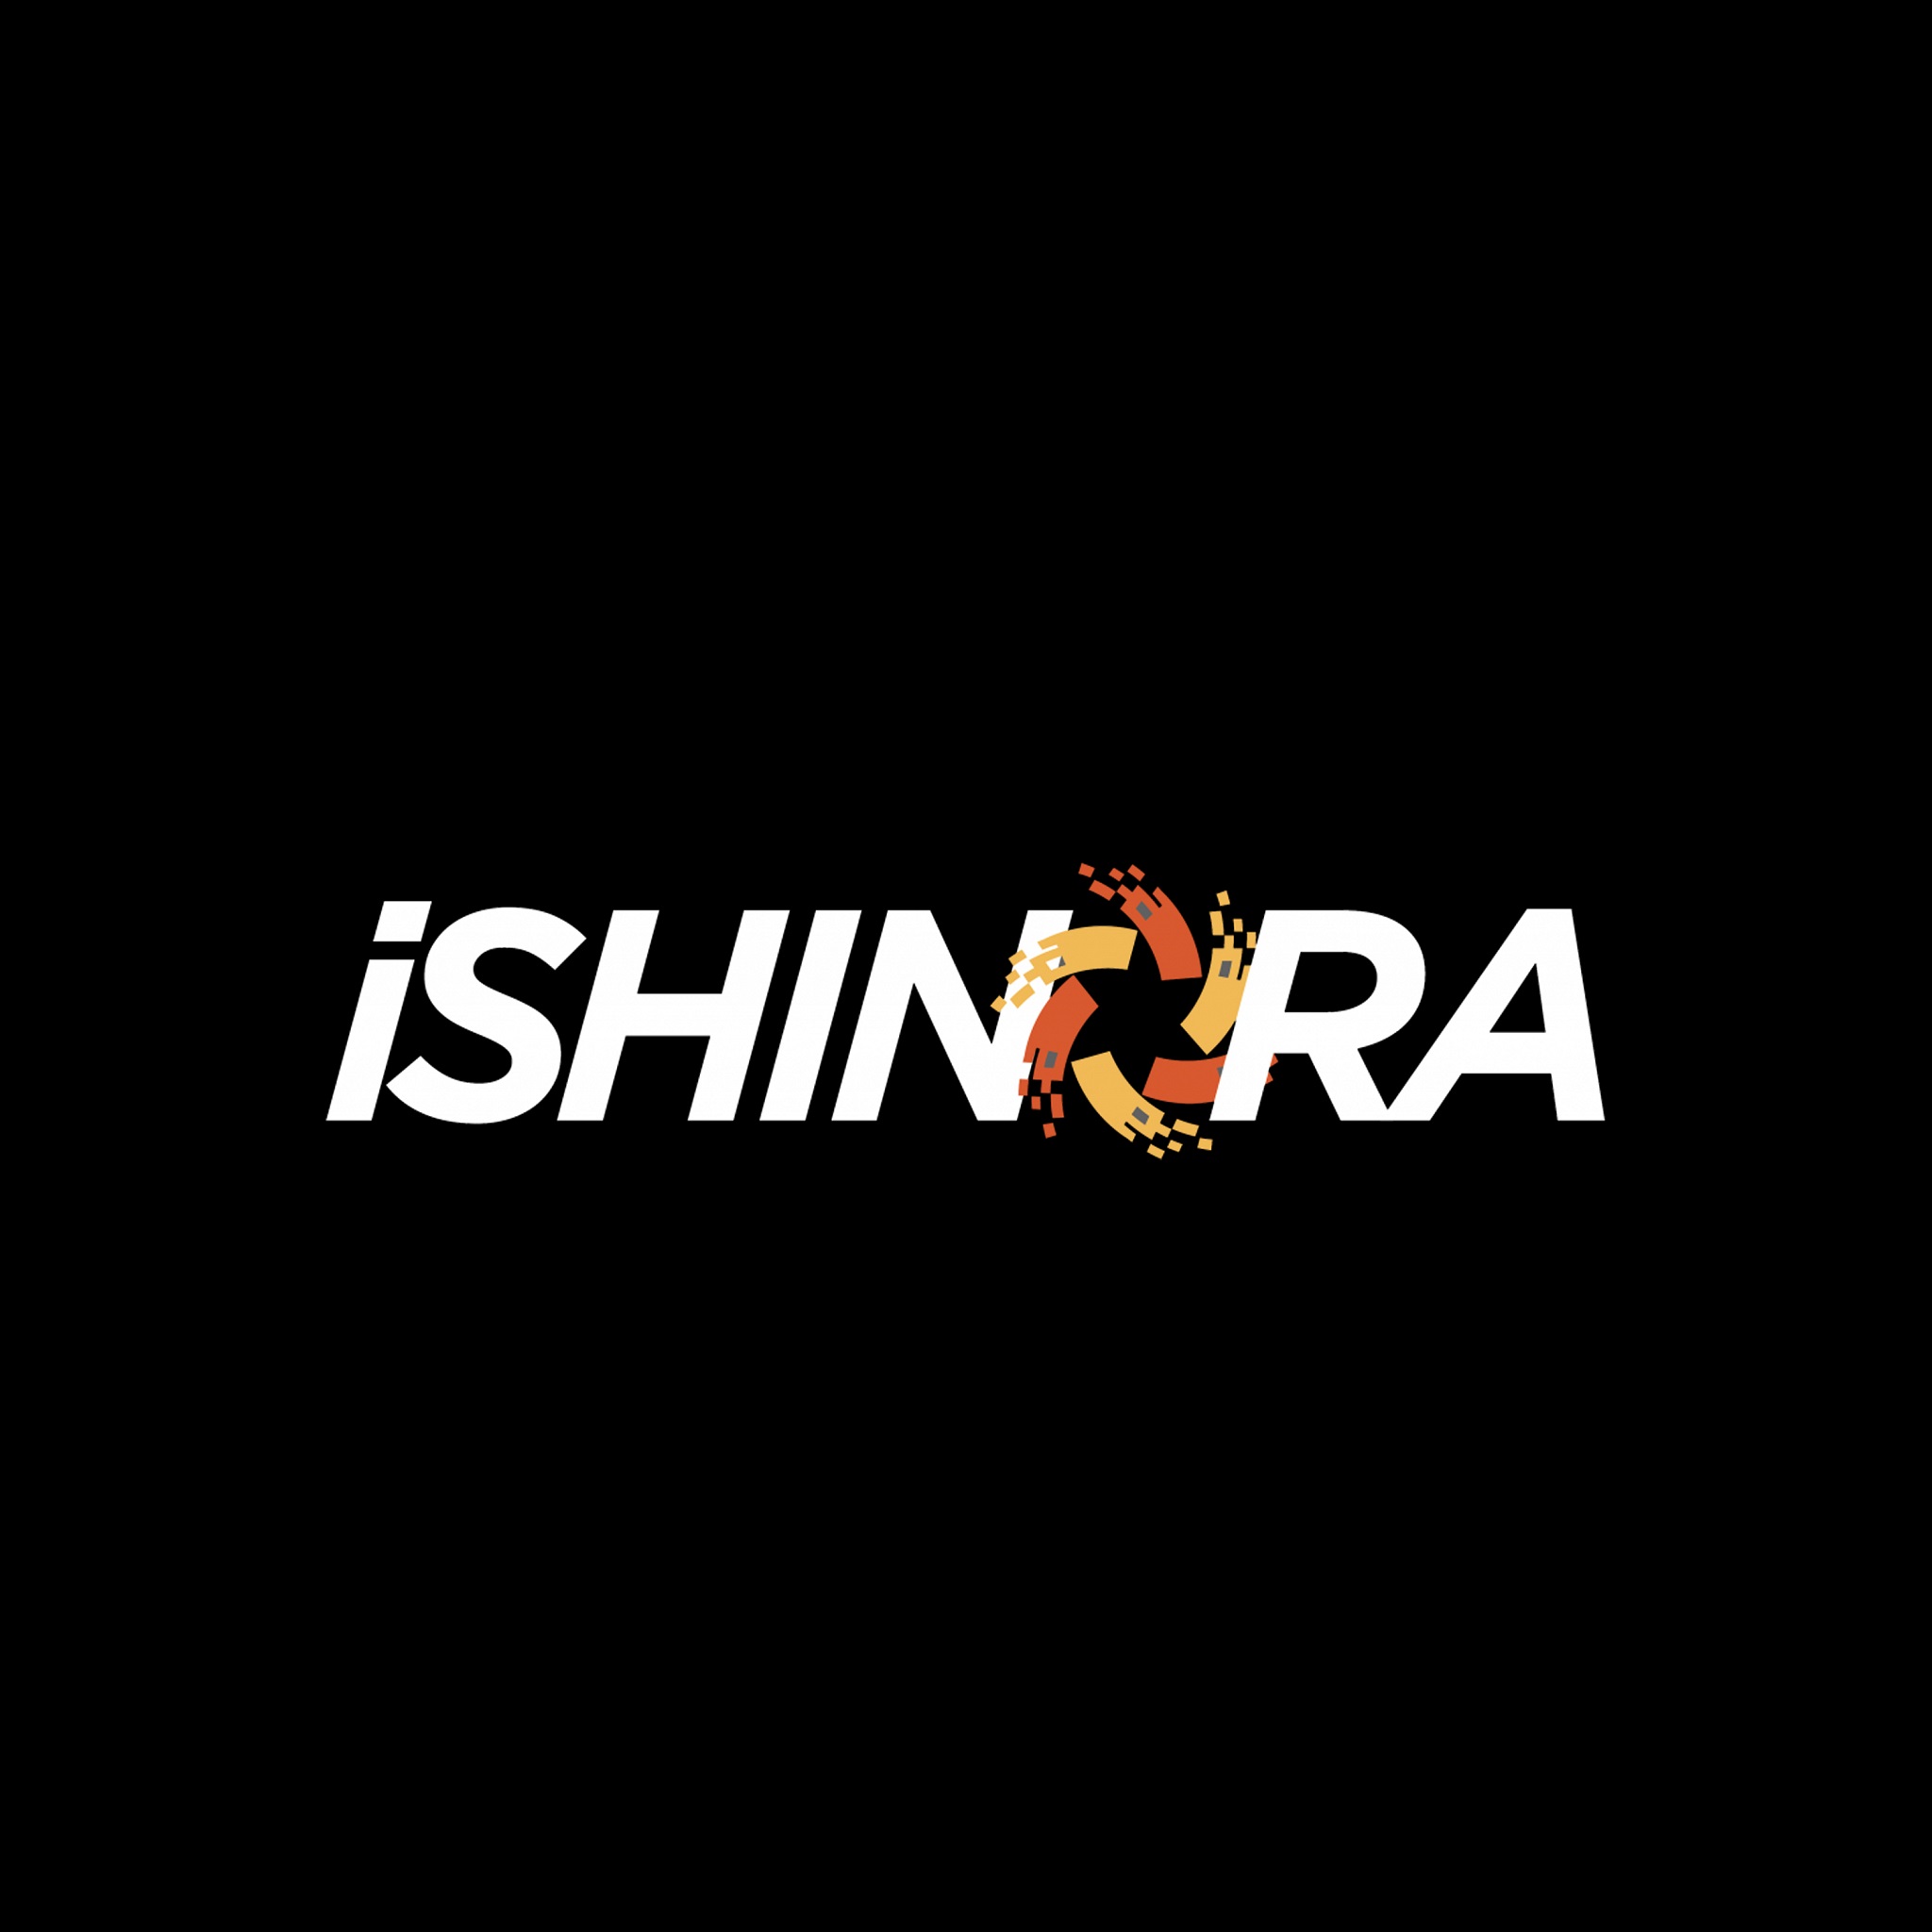 Ishinora Seo